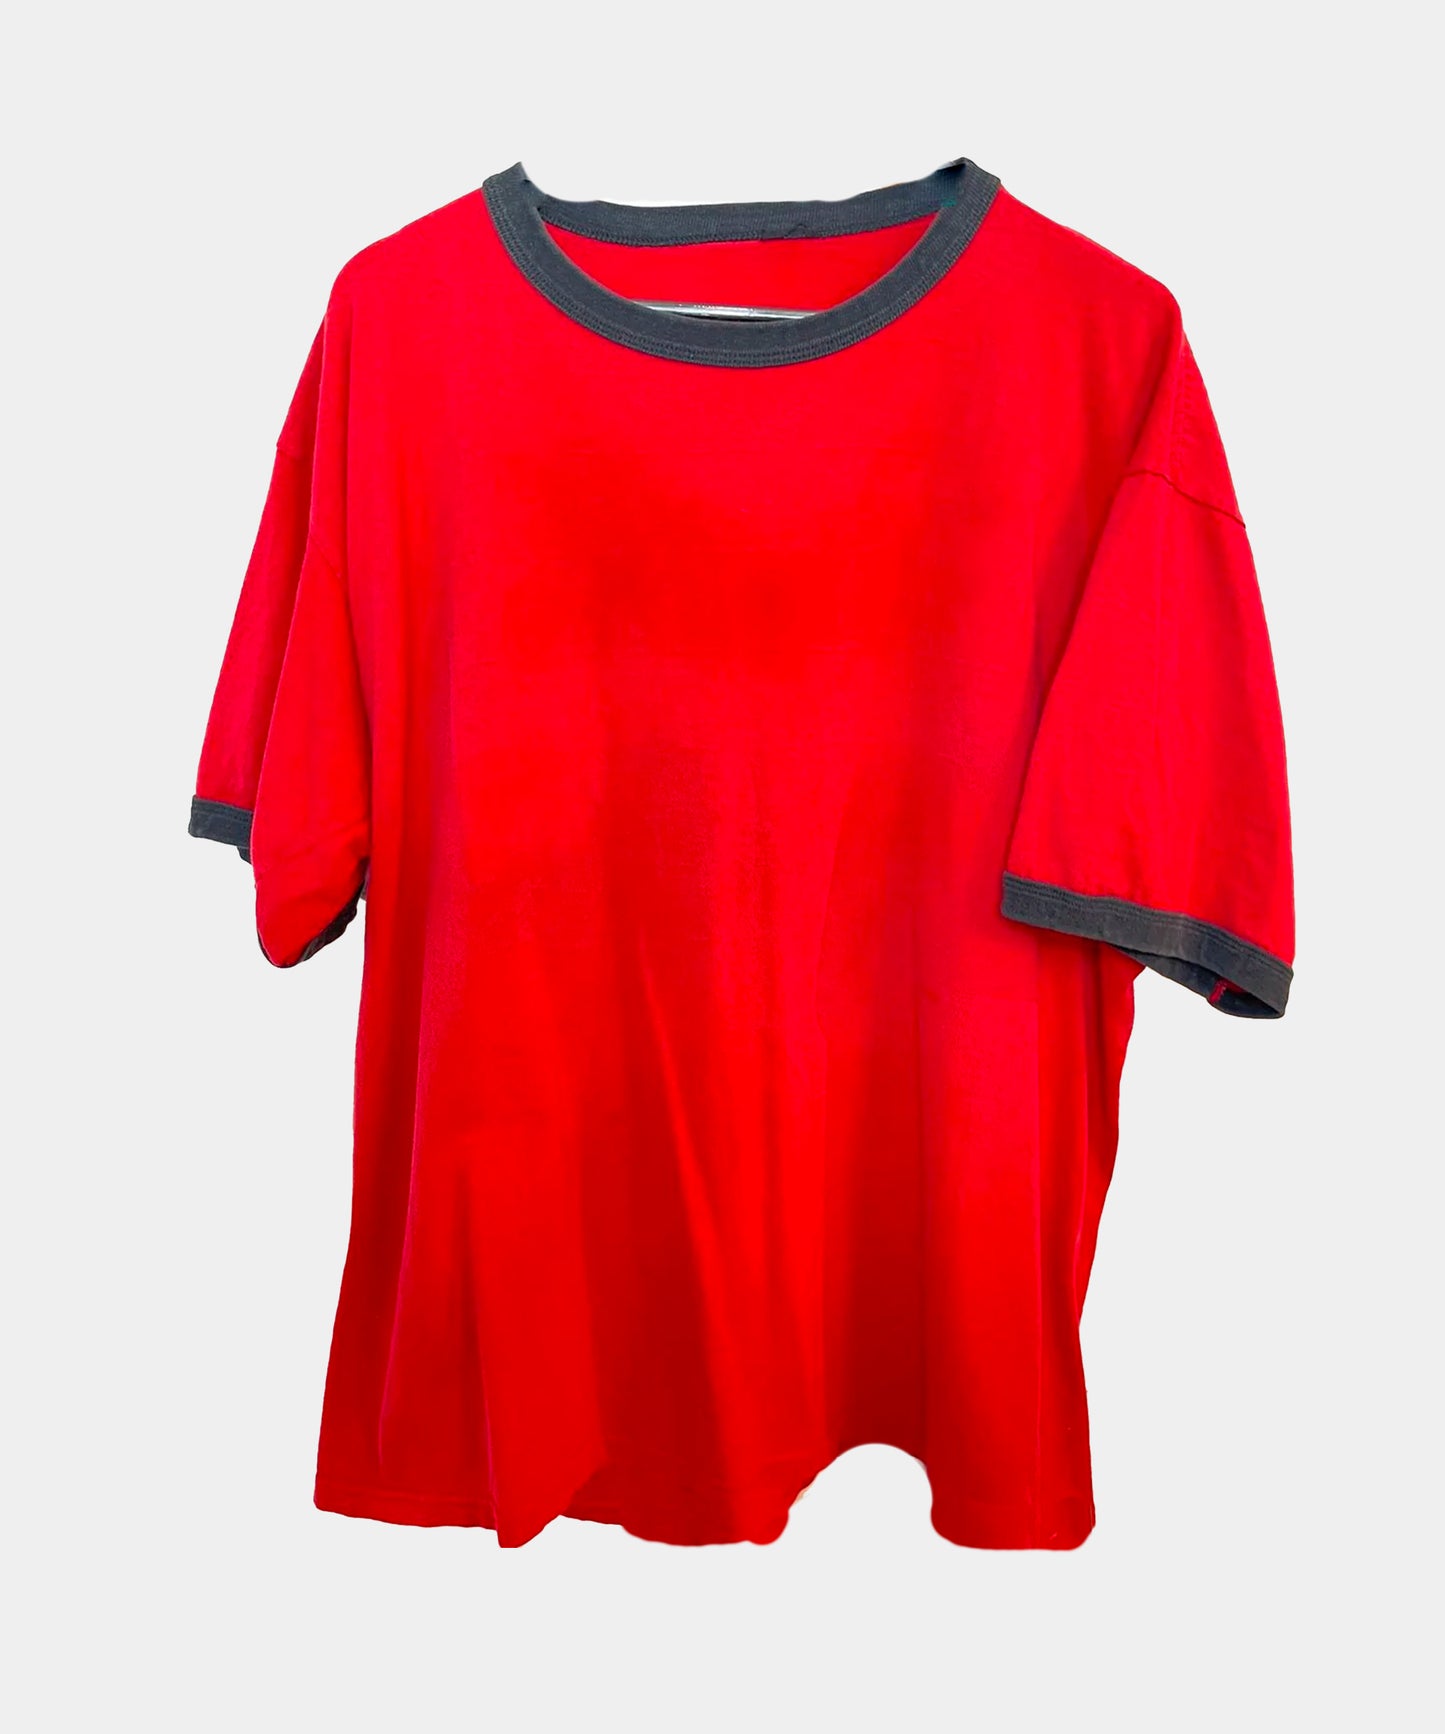 Vintage Baggy Oversized Skater Shirt Red Black